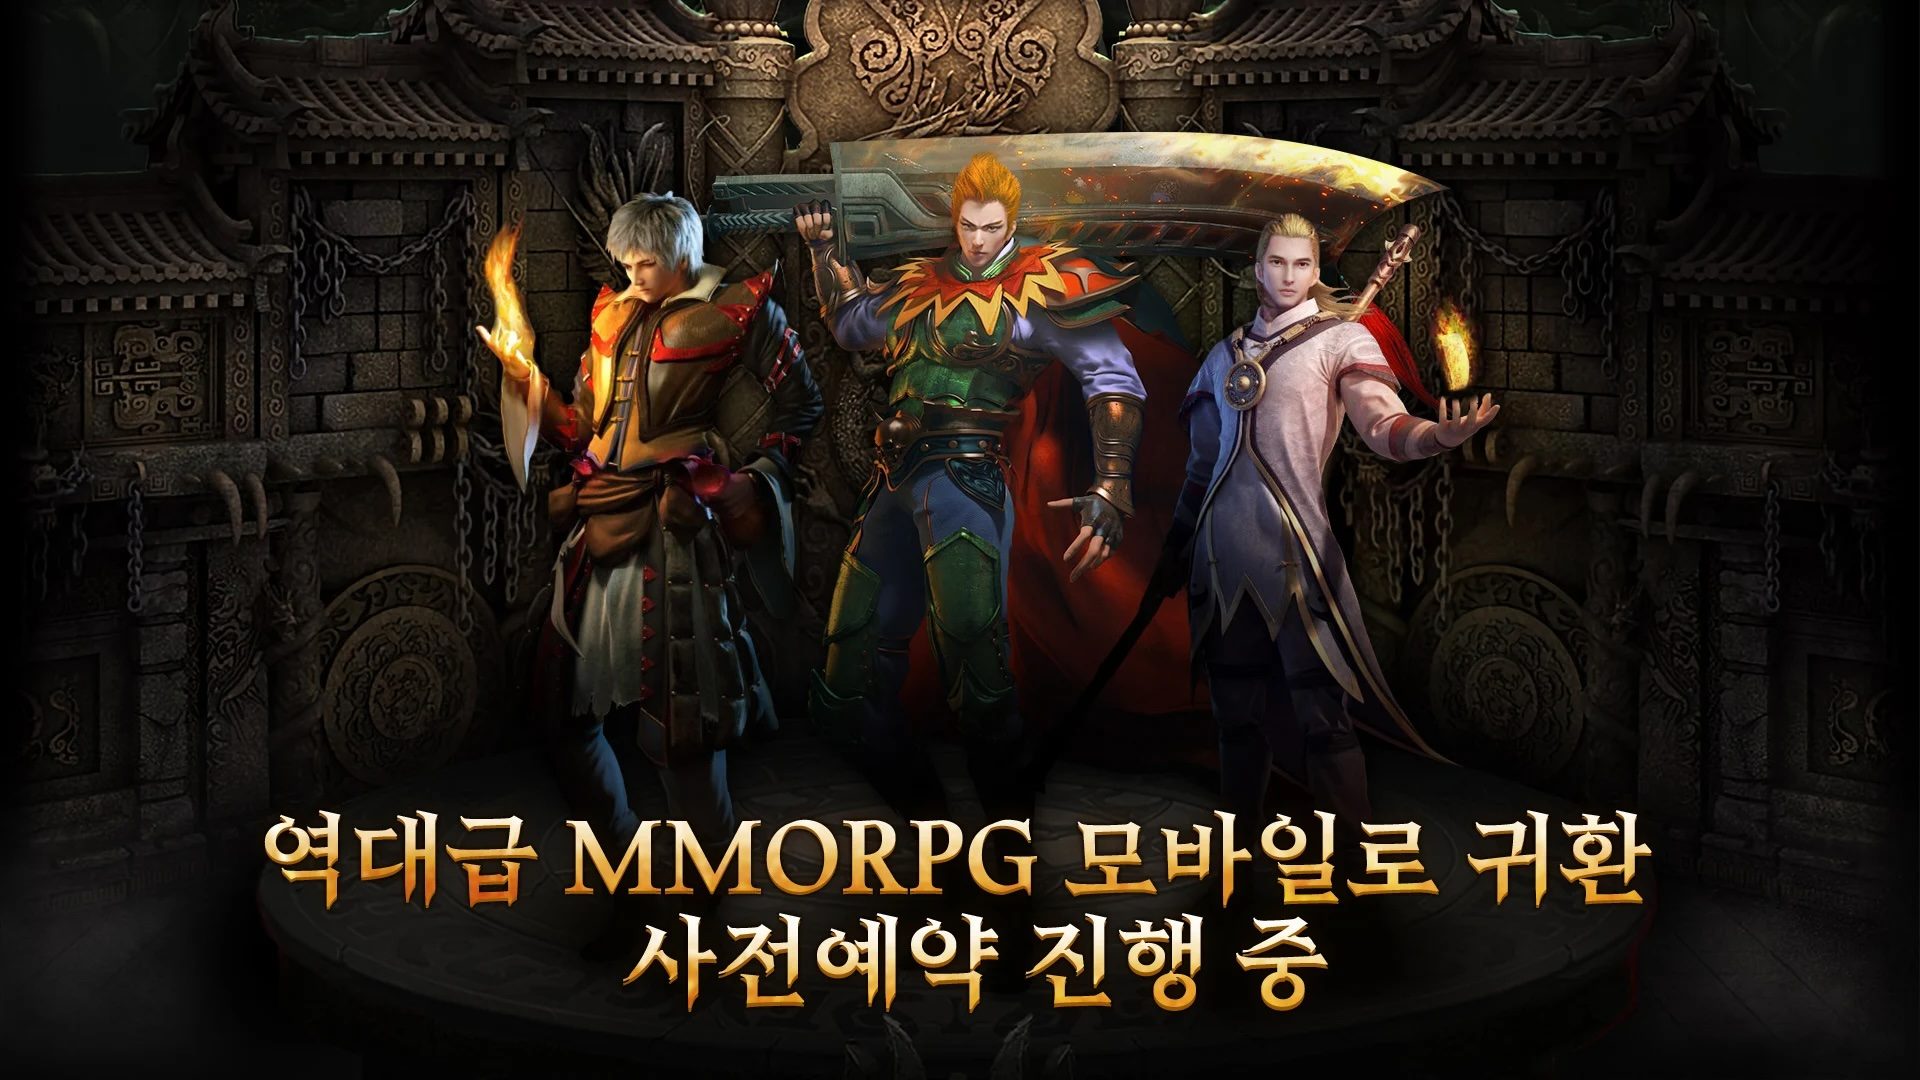 Mir2: 사북성 결전 - 새로운 플레이어를 위한 팁과 캐릭터 정보